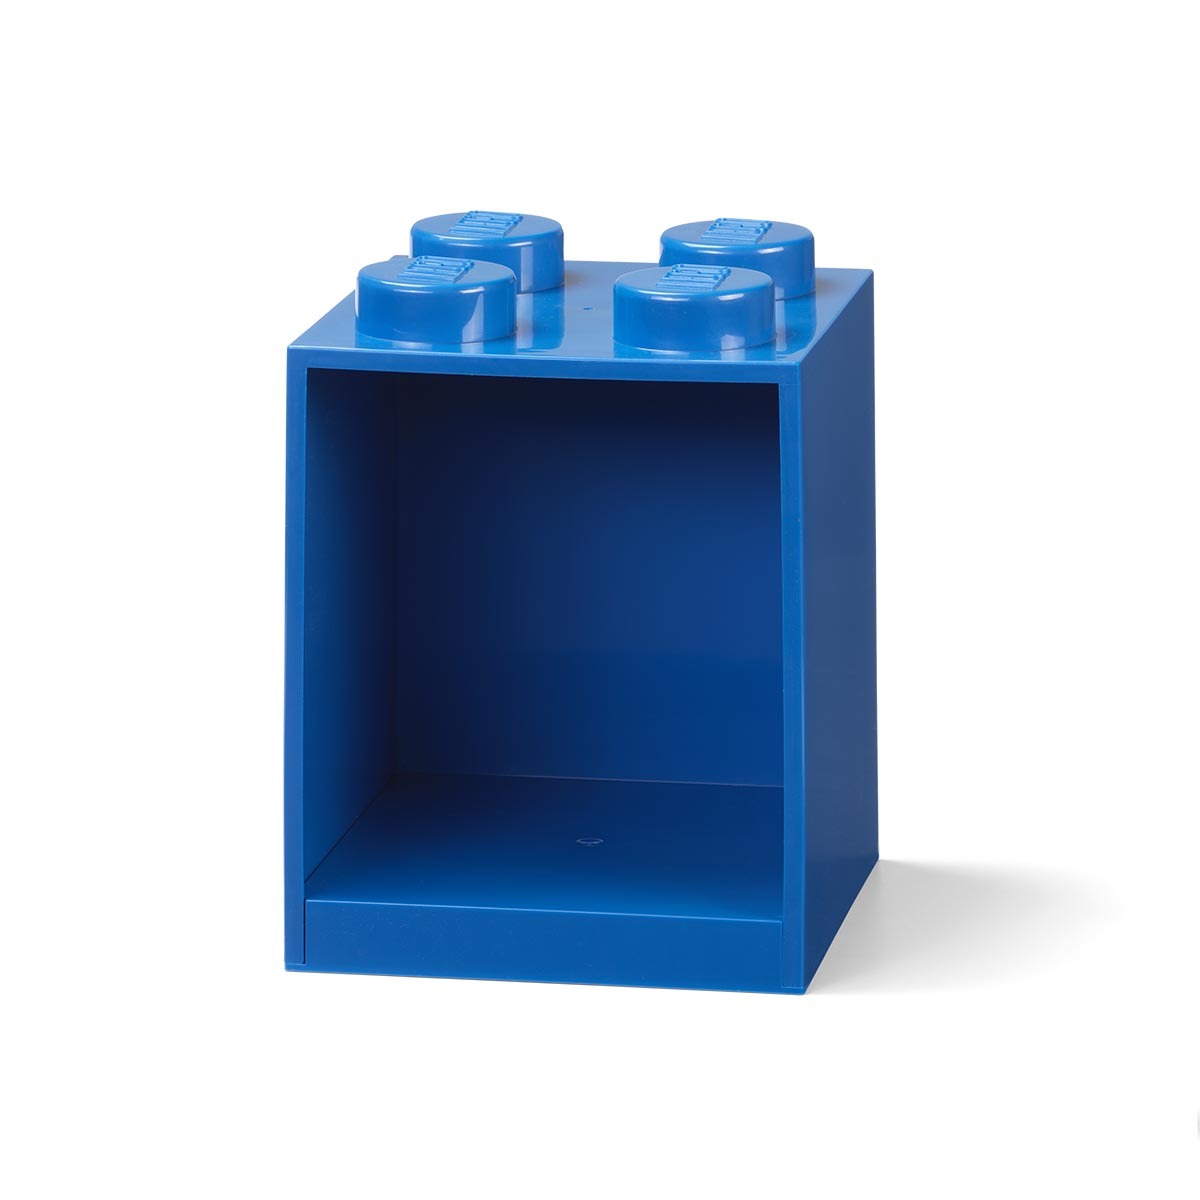 おもちゃ レゴ ブロック インテリア 本 ラック 収納 壁掛け 子ども部屋 日本正規輸入販売元 レゴ ブリックシェルフ4 Lego おしゃれ かわいい 4114 4114 Bricks Yahoo 店 通販 Yahoo ショッピング